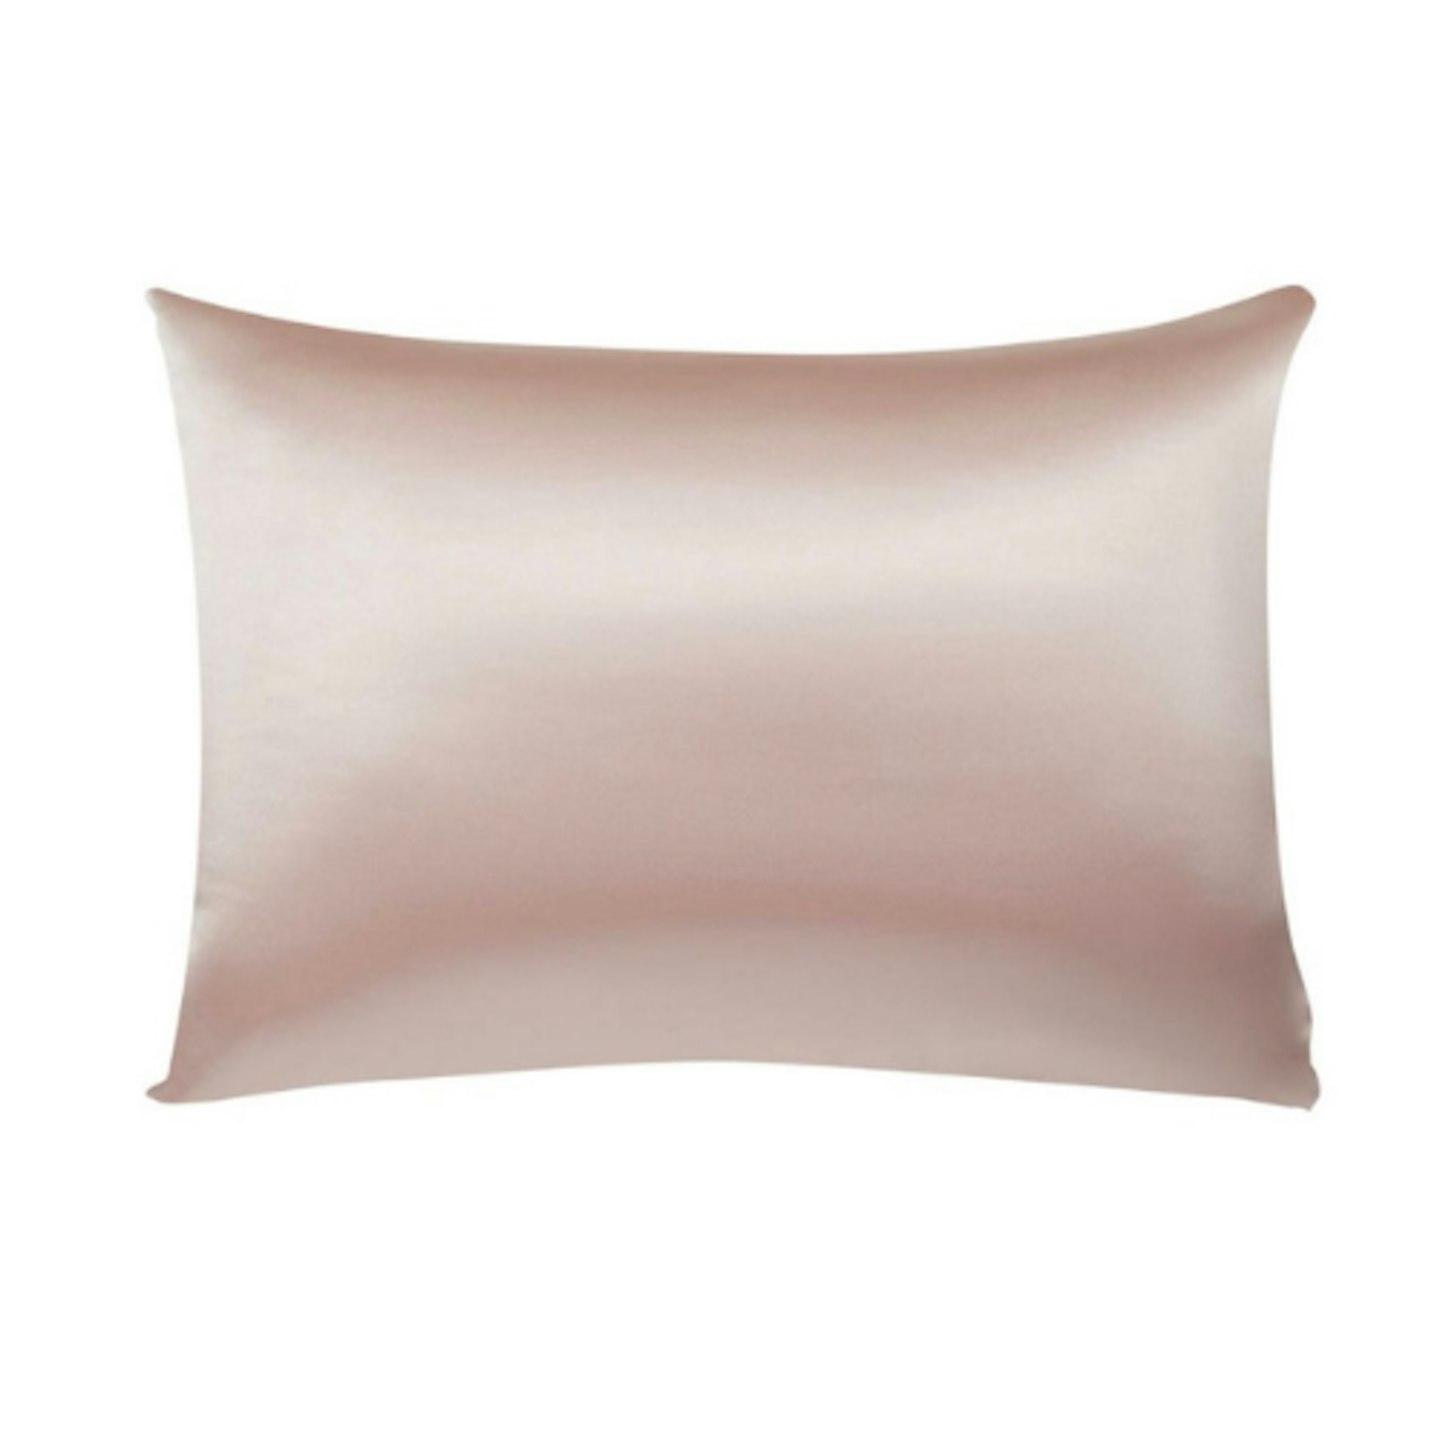 Pink satin pillowcase on white background